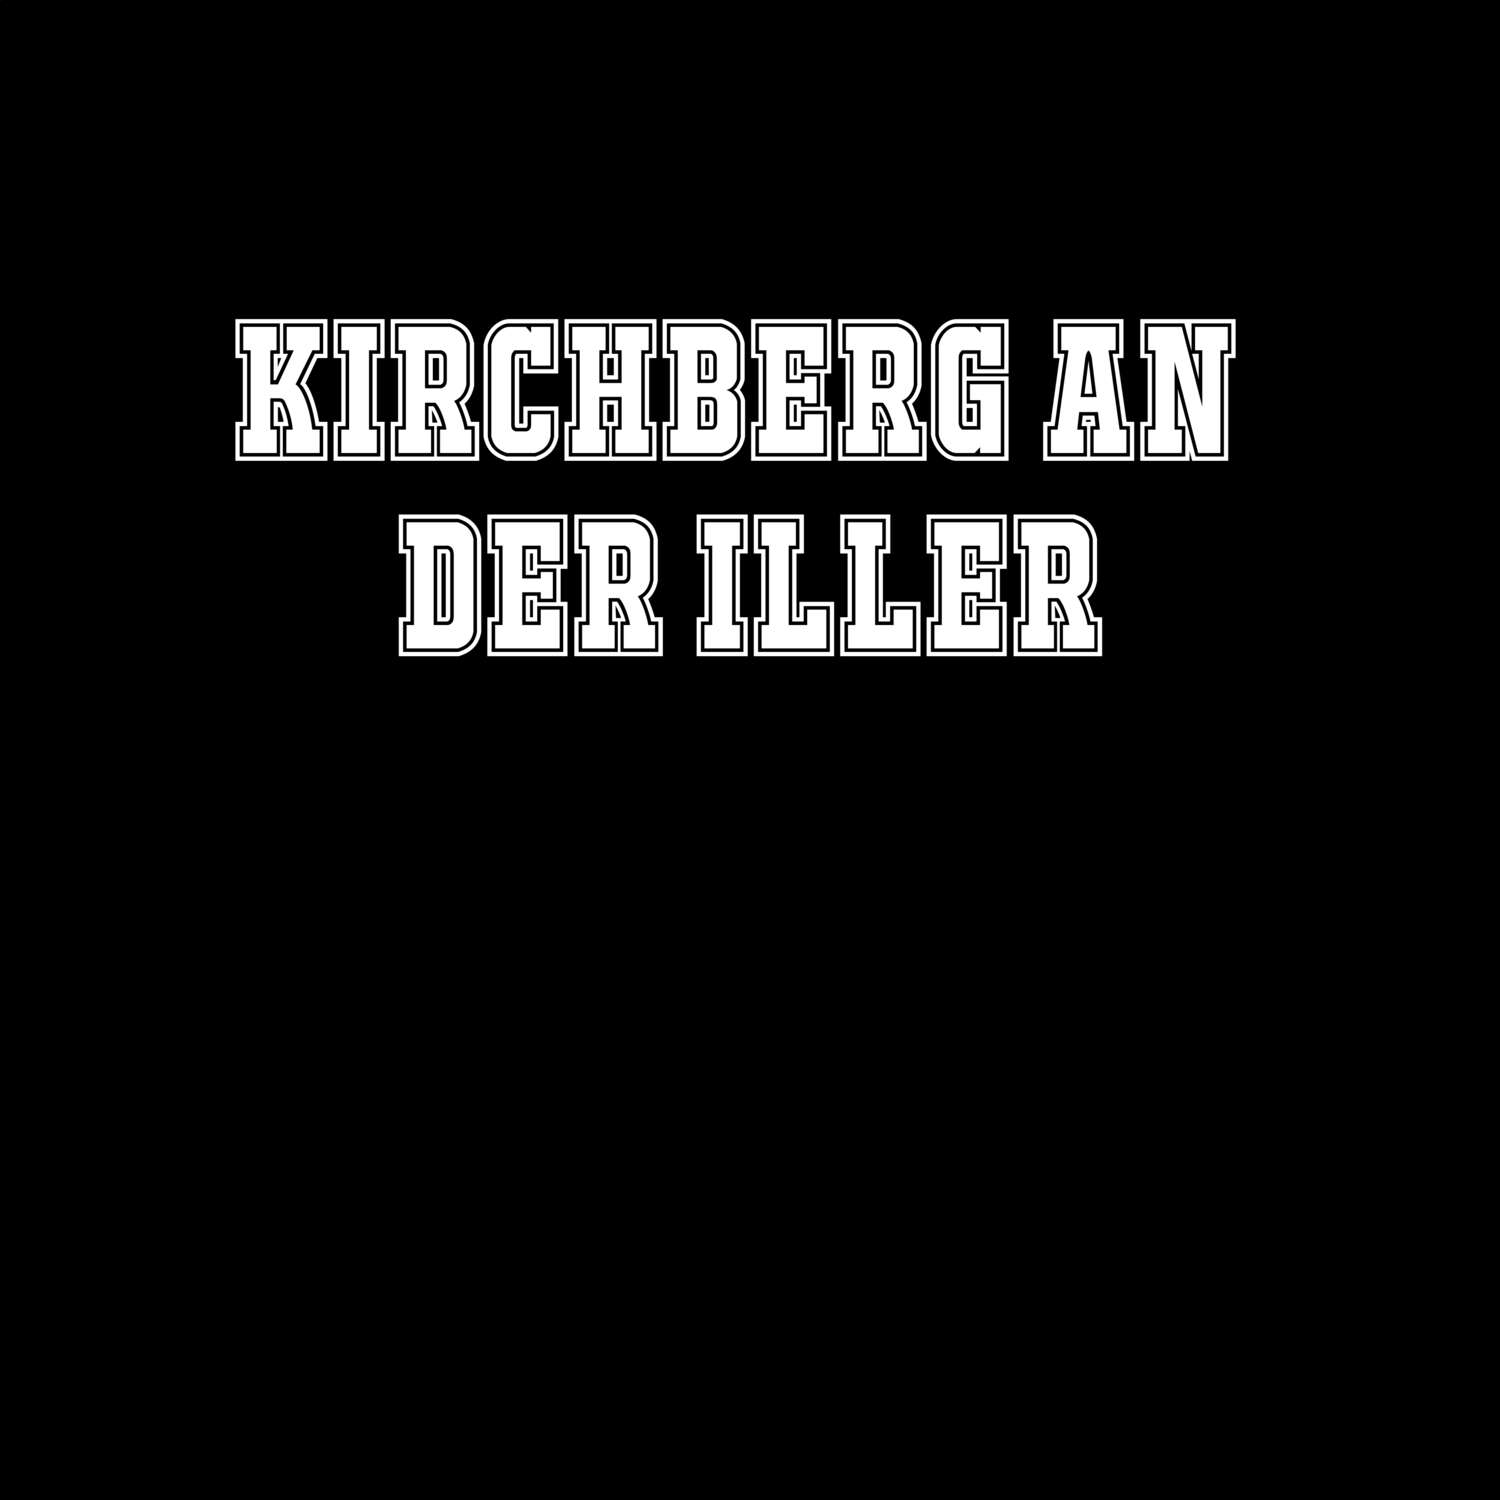 Kirchberg an der Iller T-Shirt »Classic«